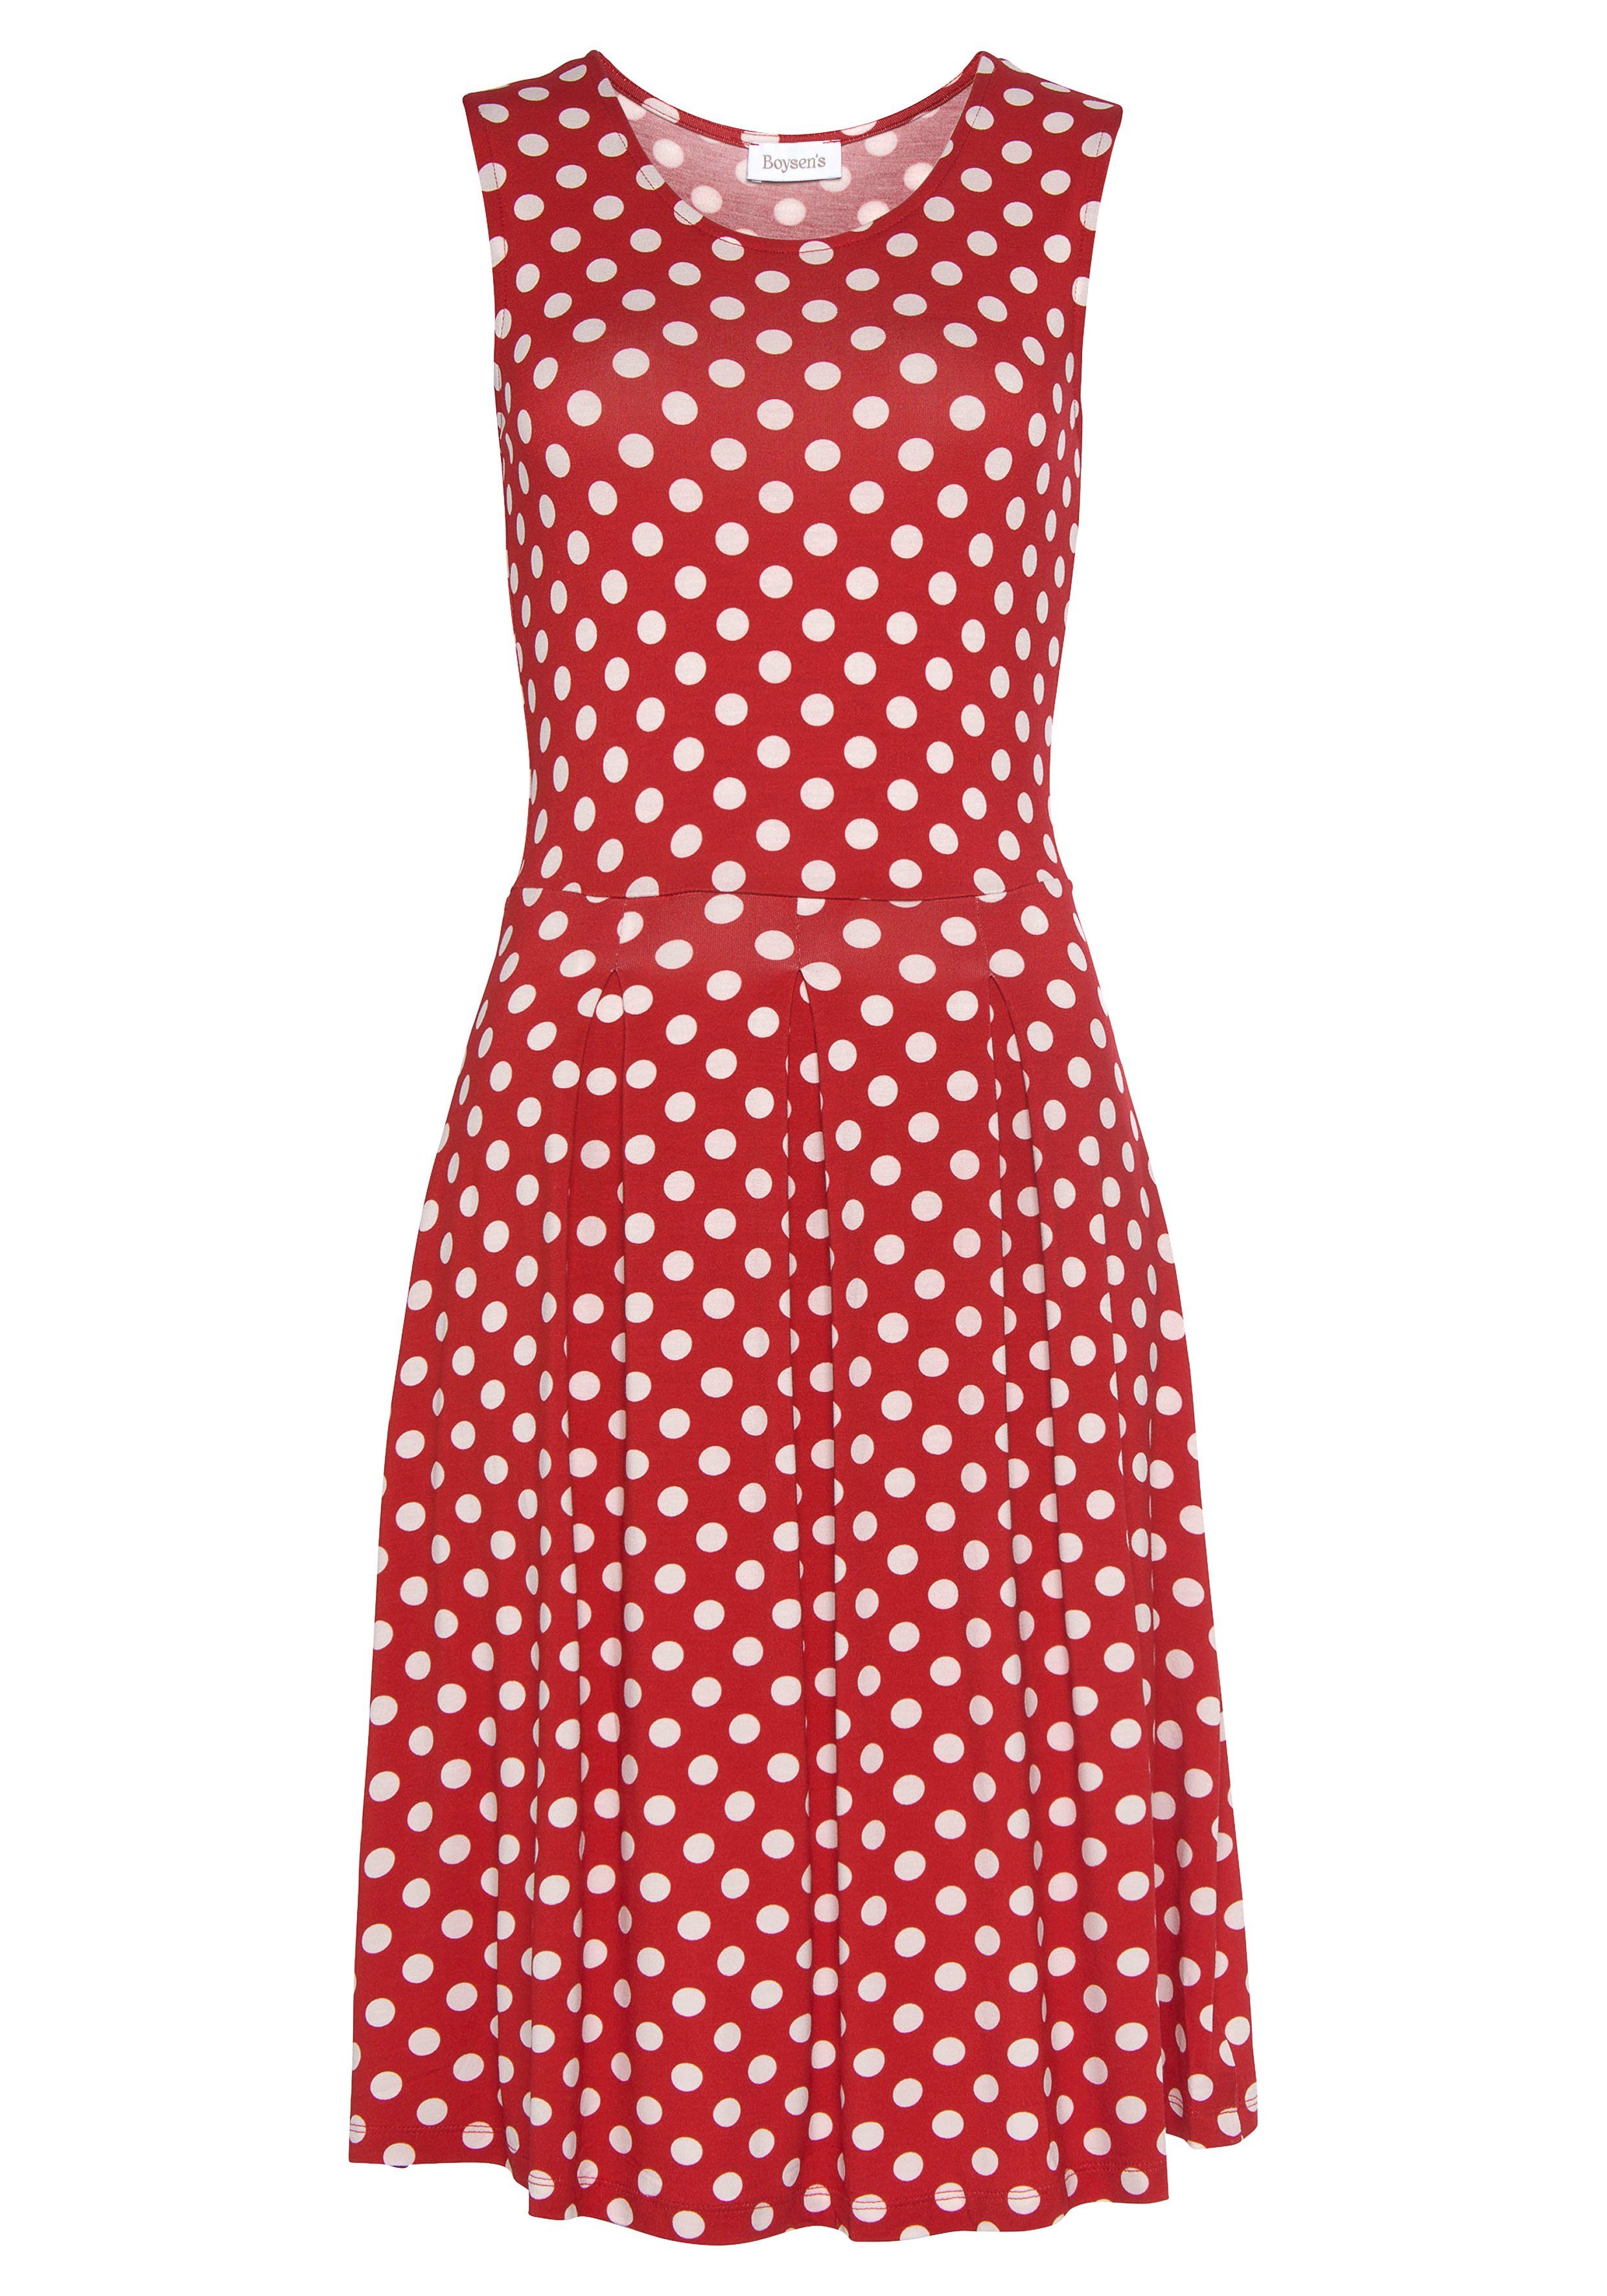 Boysen's Jerseykleid mit süßem Tupfen-Print weiß rot